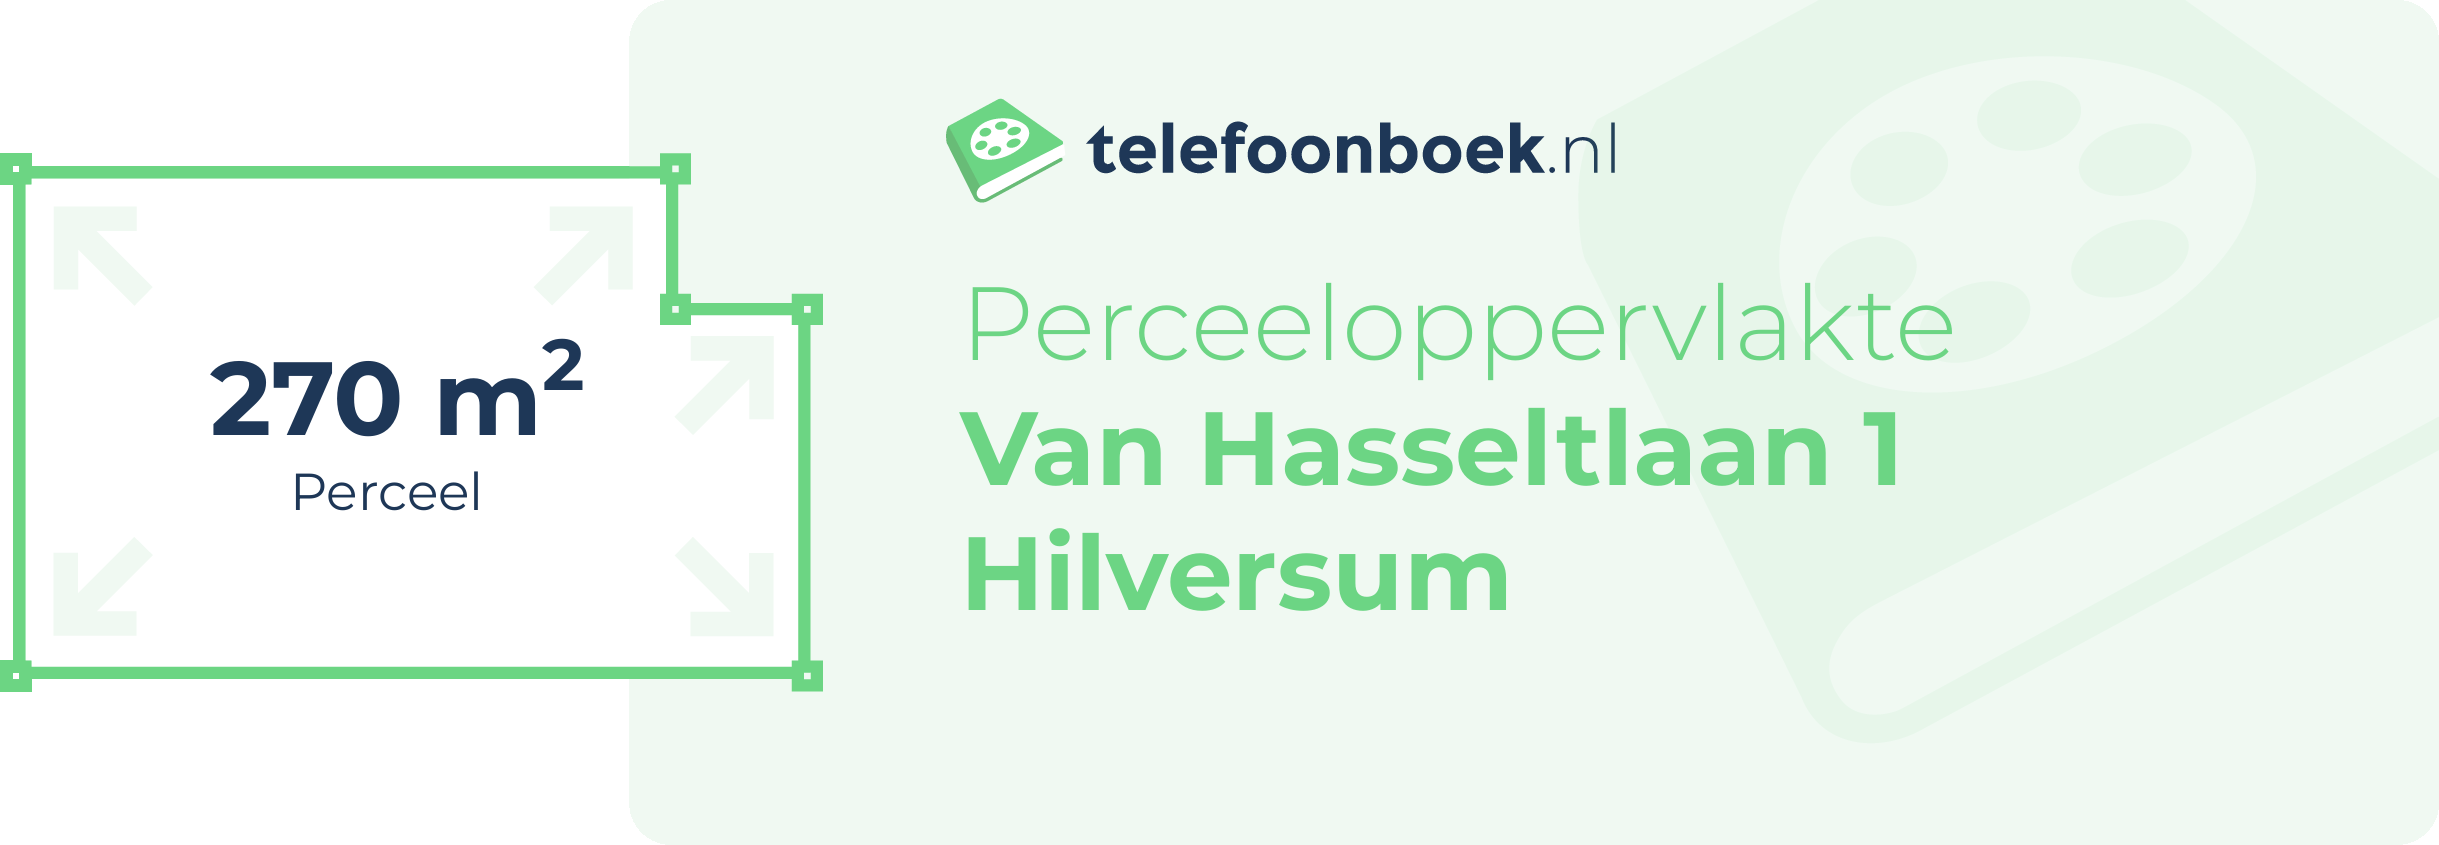 Perceeloppervlakte Van Hasseltlaan 1 Hilversum